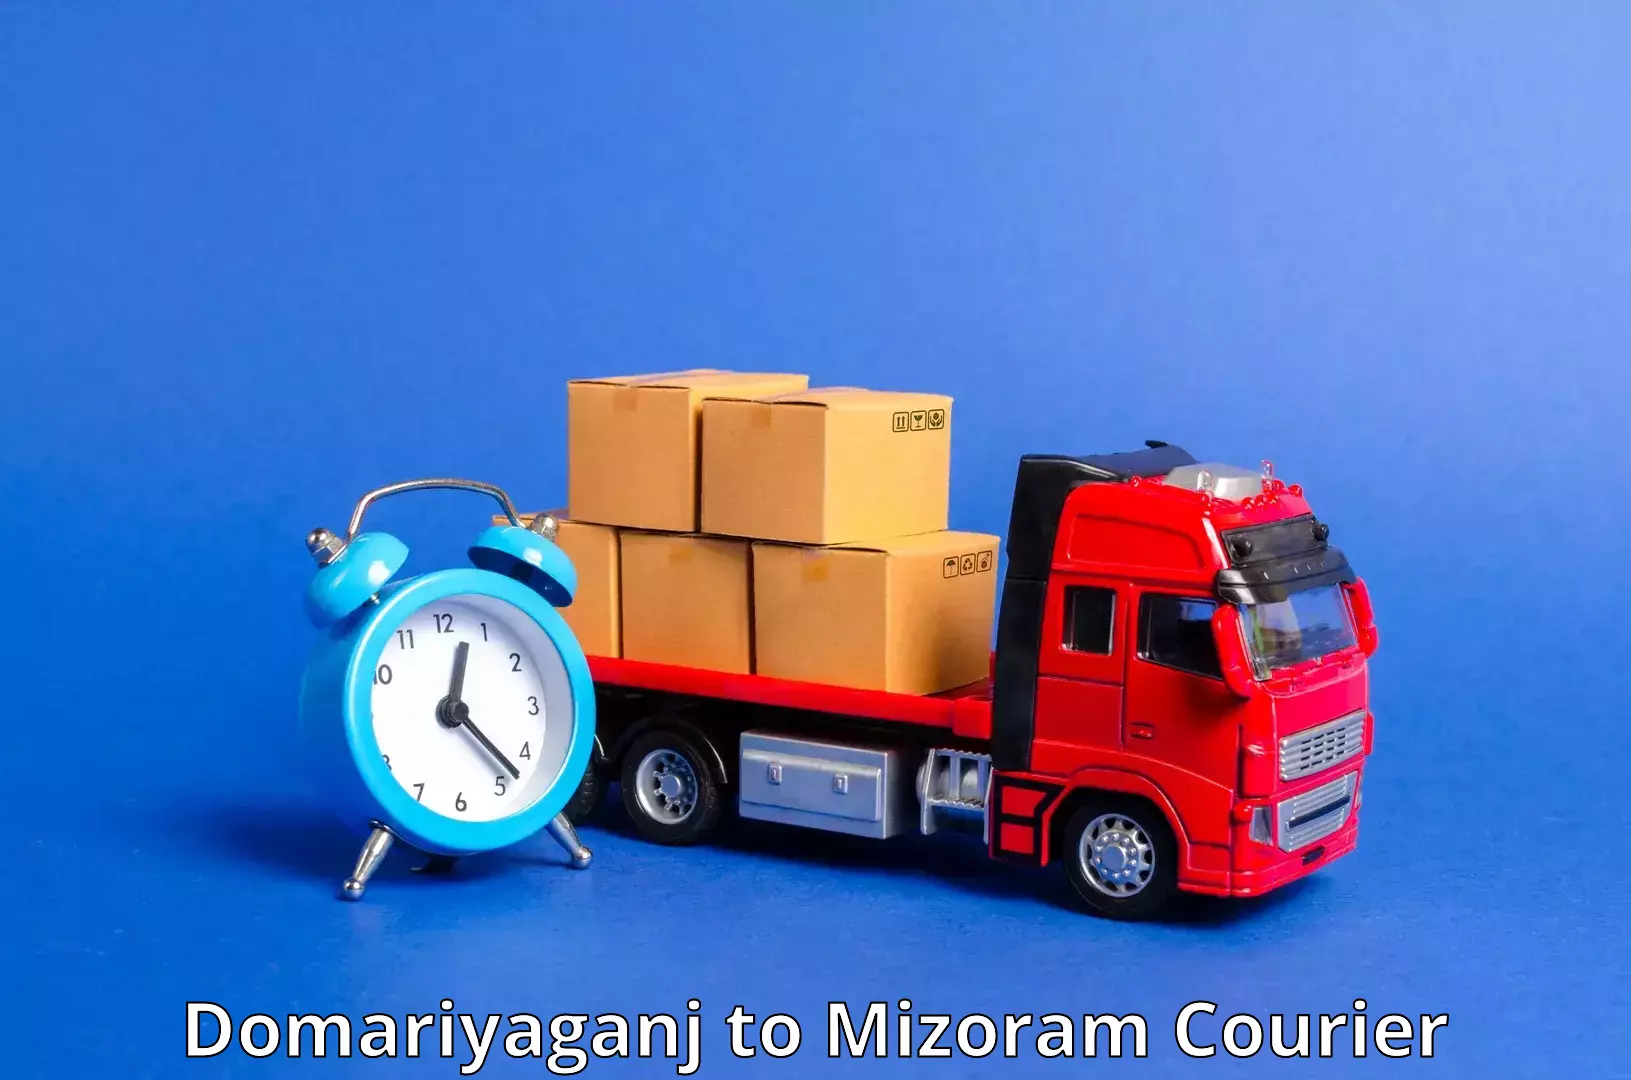 Efficient order fulfillment in Domariyaganj to Mizoram